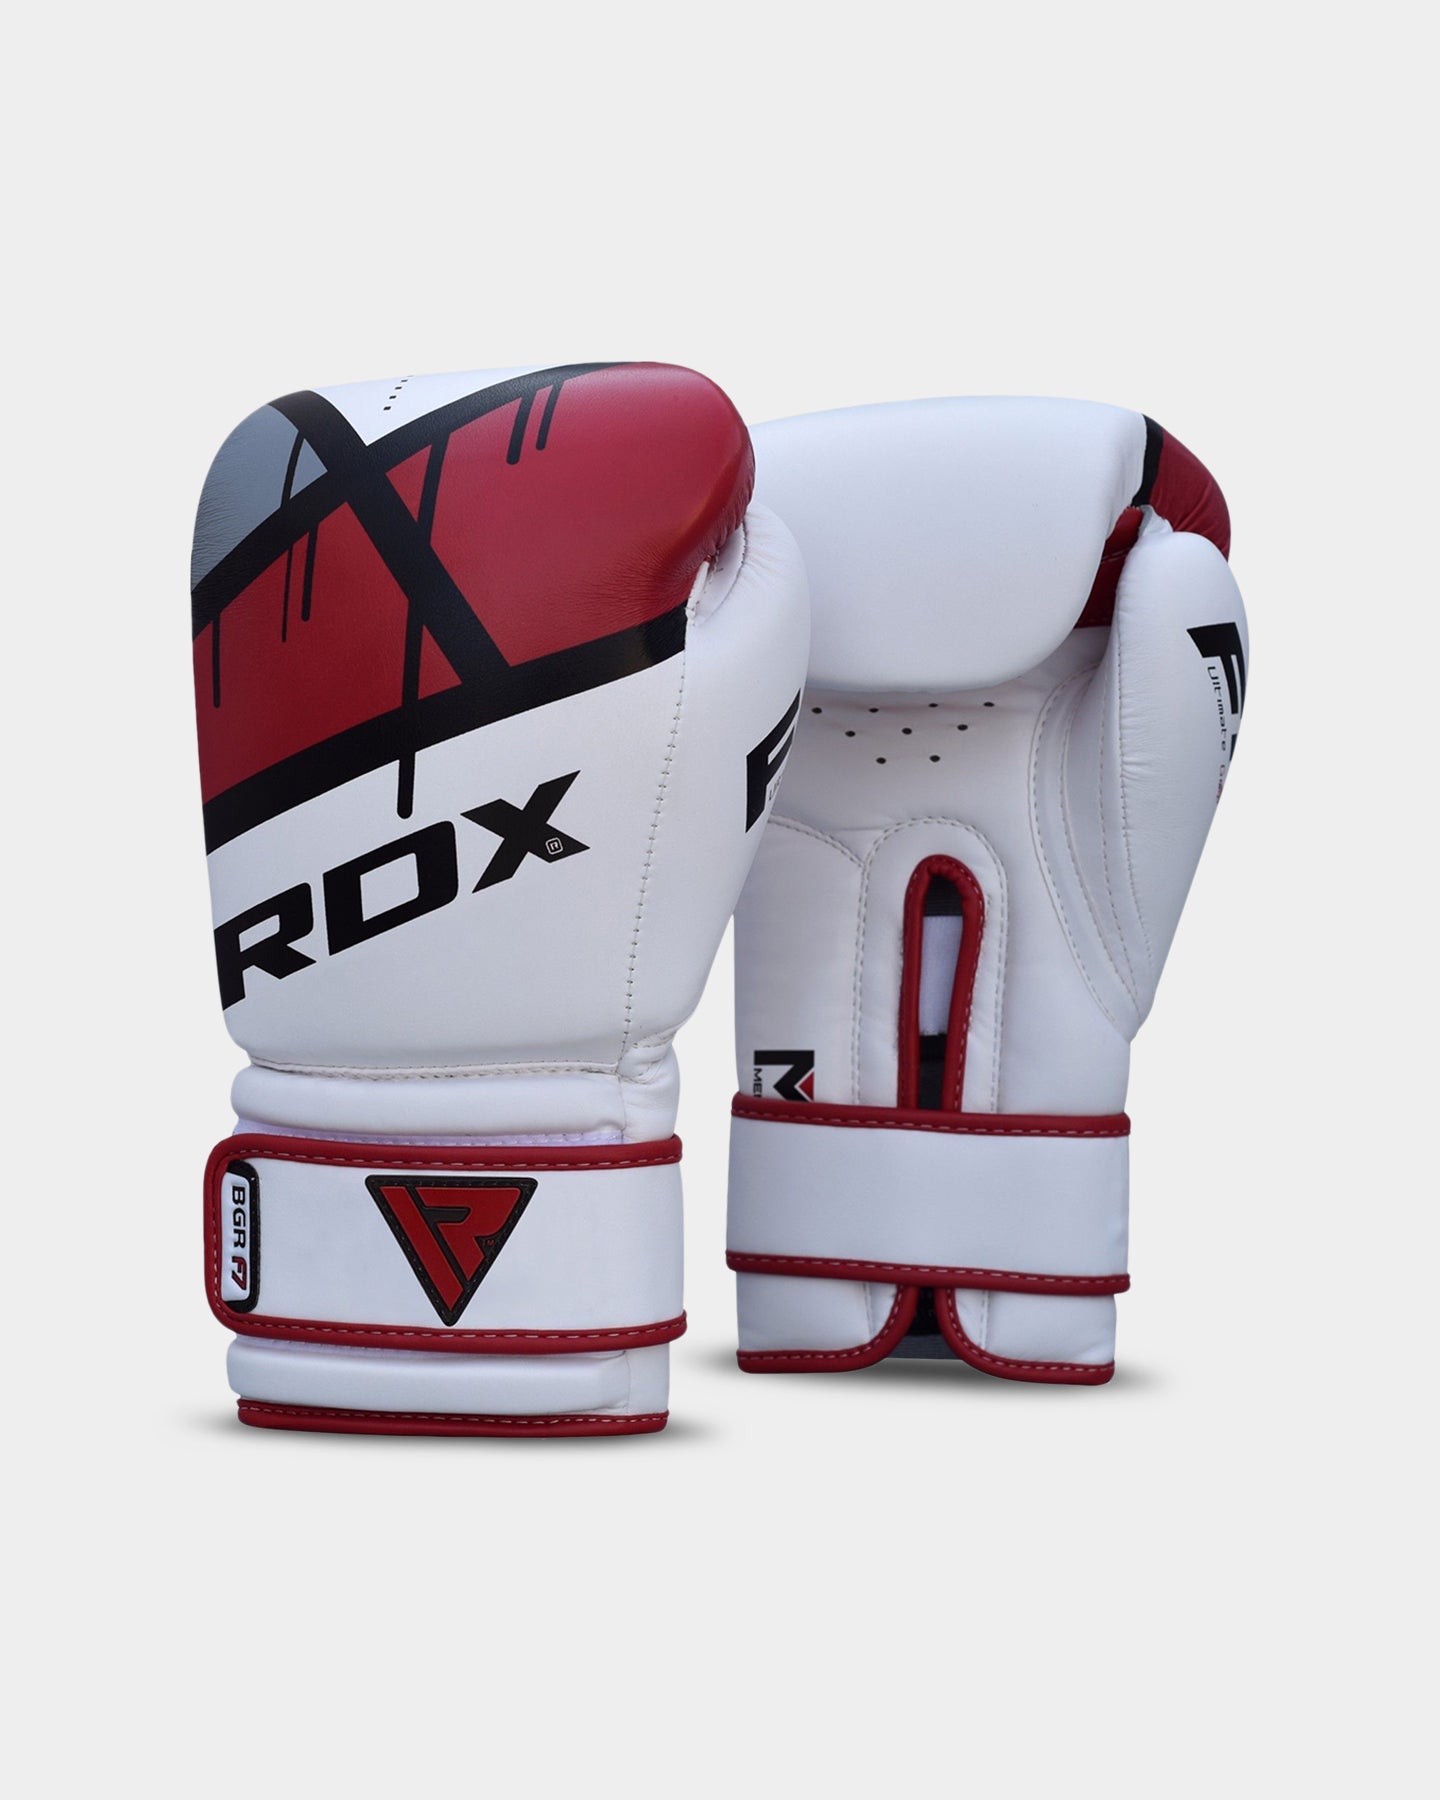 Image of RDX Sports F7 Ego Training Boxing Gloves